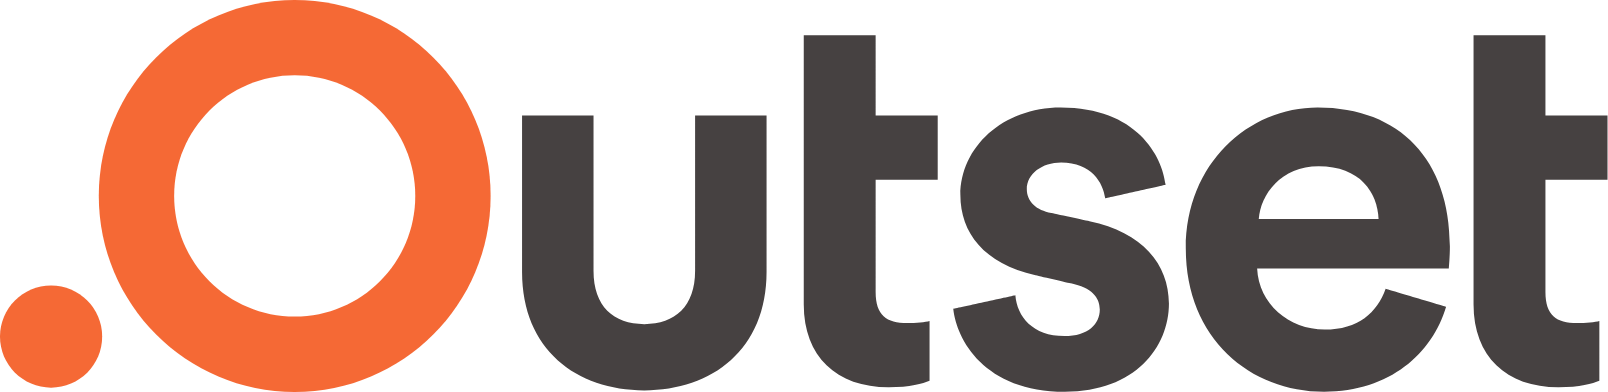 Outset Medical logo large (transparent PNG)